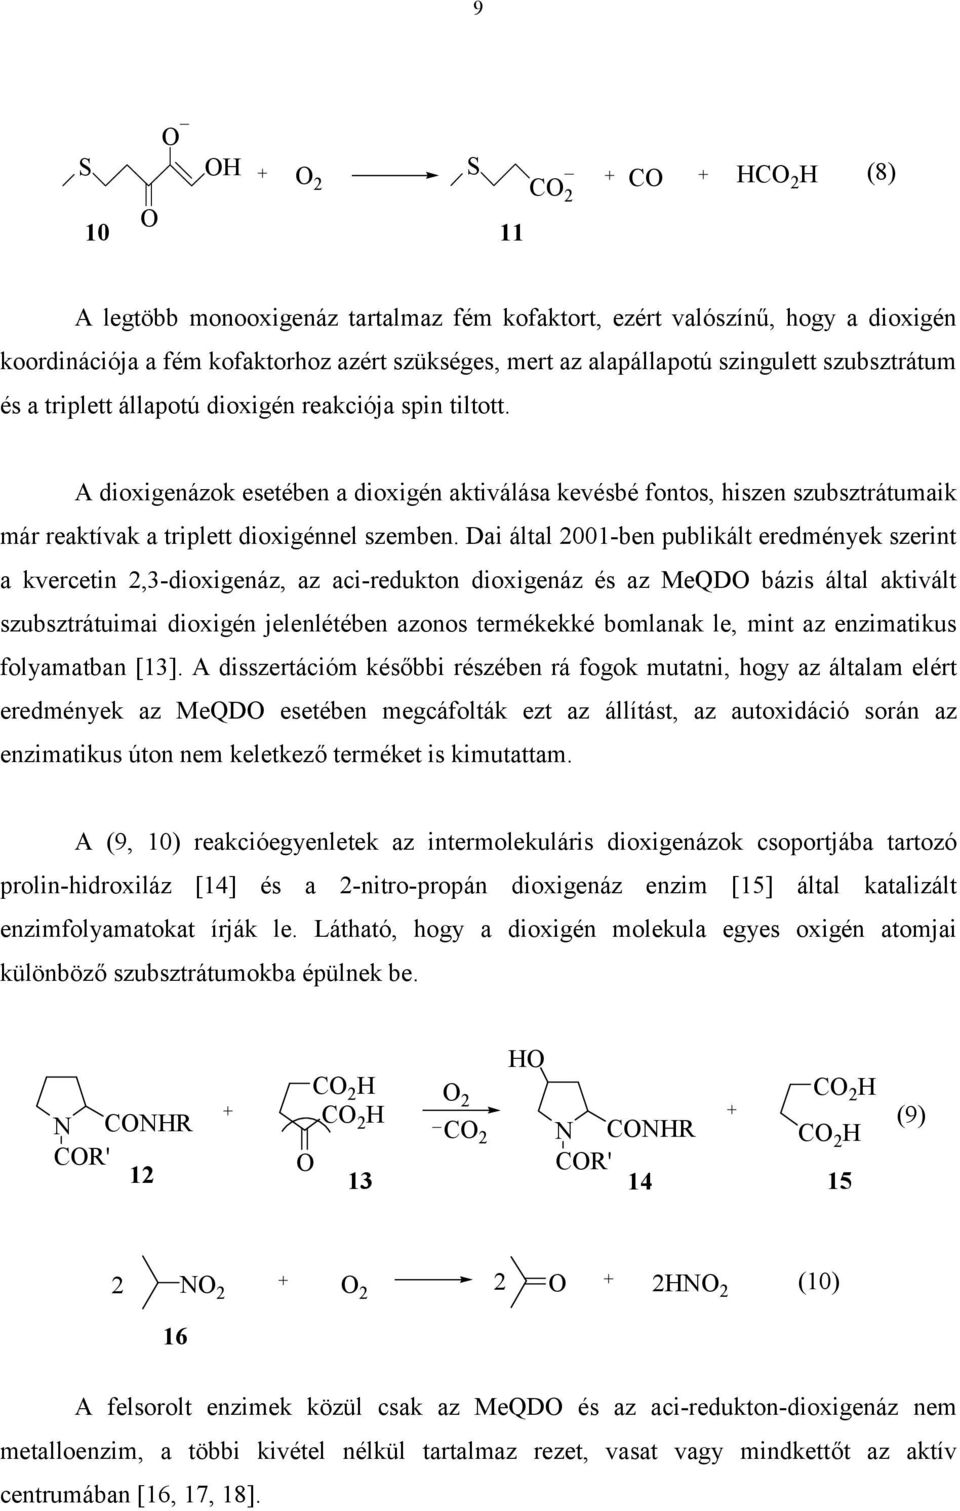 Dai által 2001-ben publikált eredmények szerint a kvercetin 2,3-dioxigenáz, az aci-redukton dioxigenáz és az MeQD bázis által aktivált szubsztrátuimai dioxigén jelenlétében azonos termékekké bomlanak